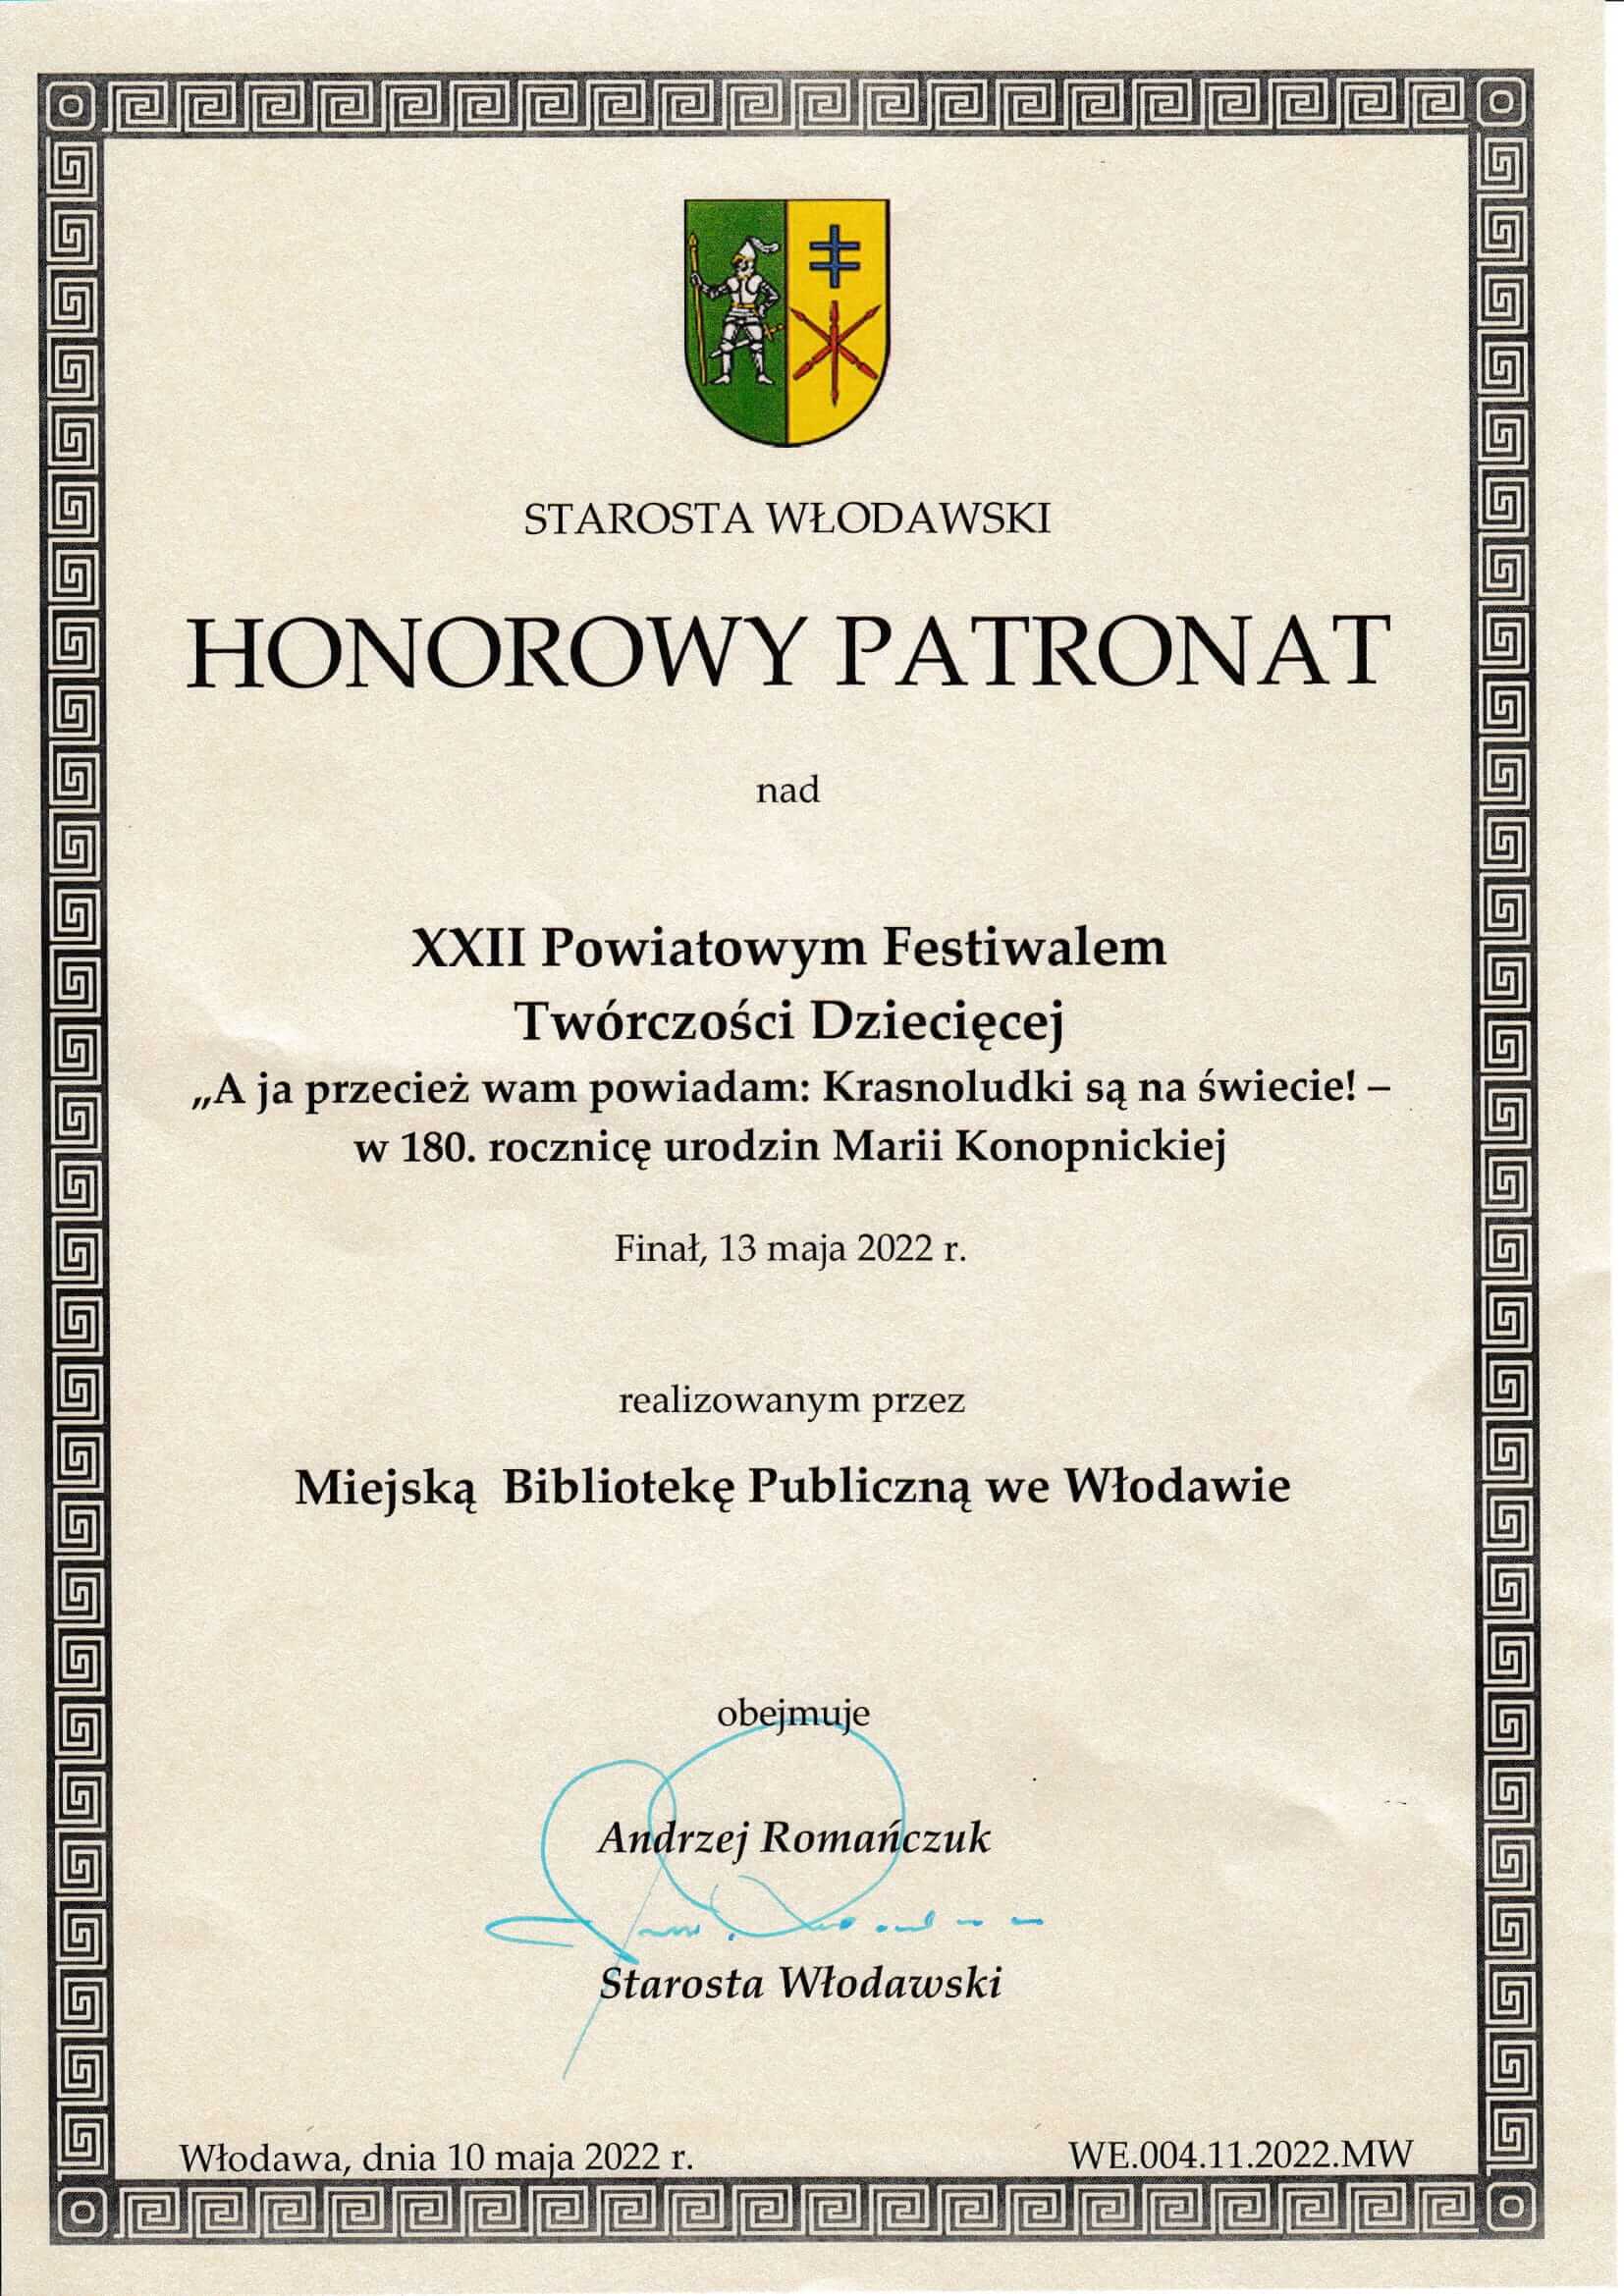 Dokument potwierdzajacy honorowy patronat Starosty Włodawskiego nad wydarzeniem. 